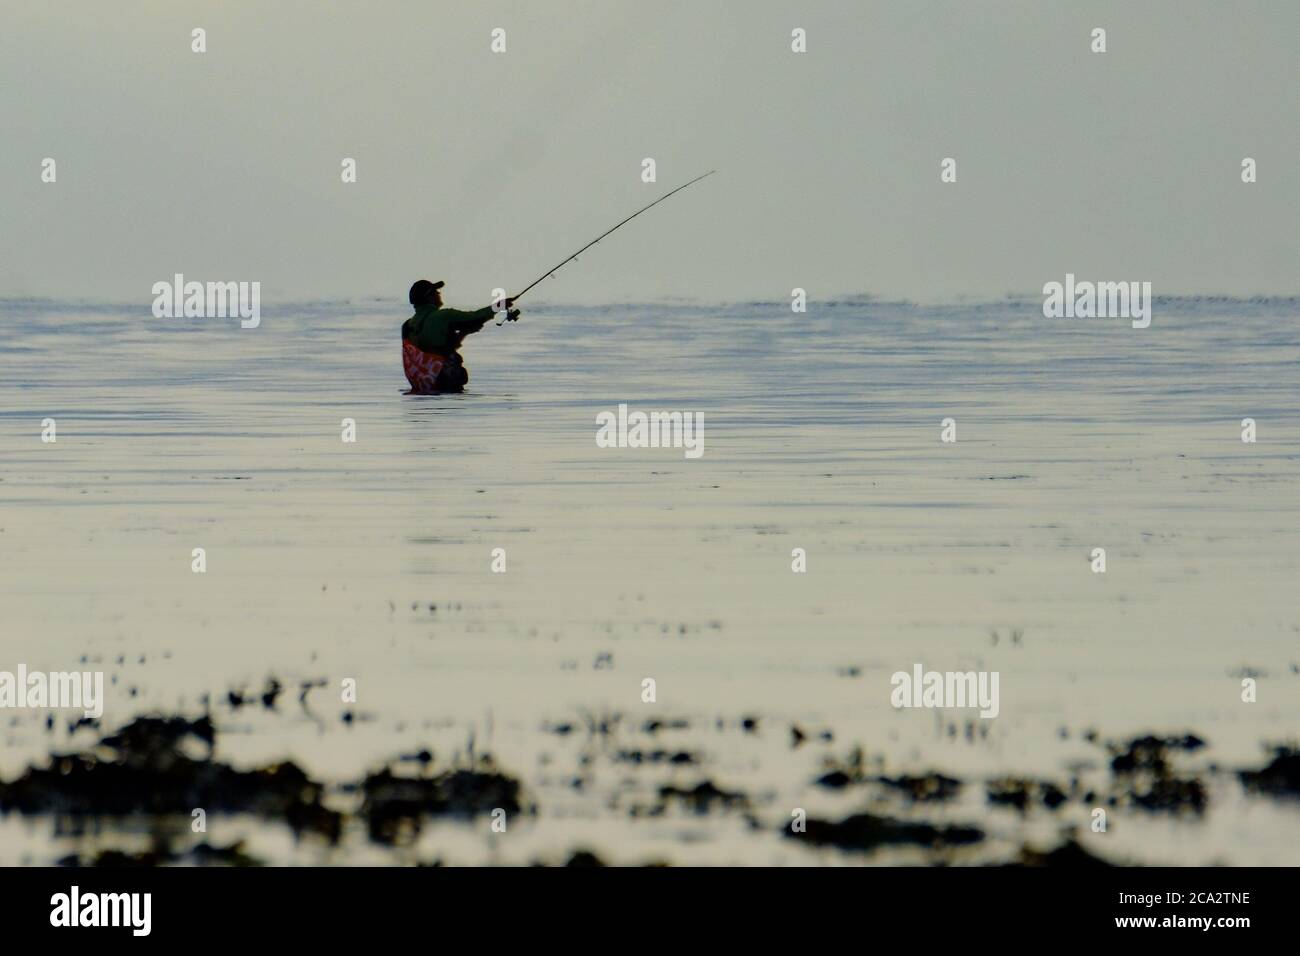 Worthing Beach, Worthing, Reino Unido. 4 de agosto de 2020. Un hombre de pie en el mar poco profundo, pescando en una mañana tranquila. Imagen de crédito: Julie Edwards/Alamy Live News Foto de stock